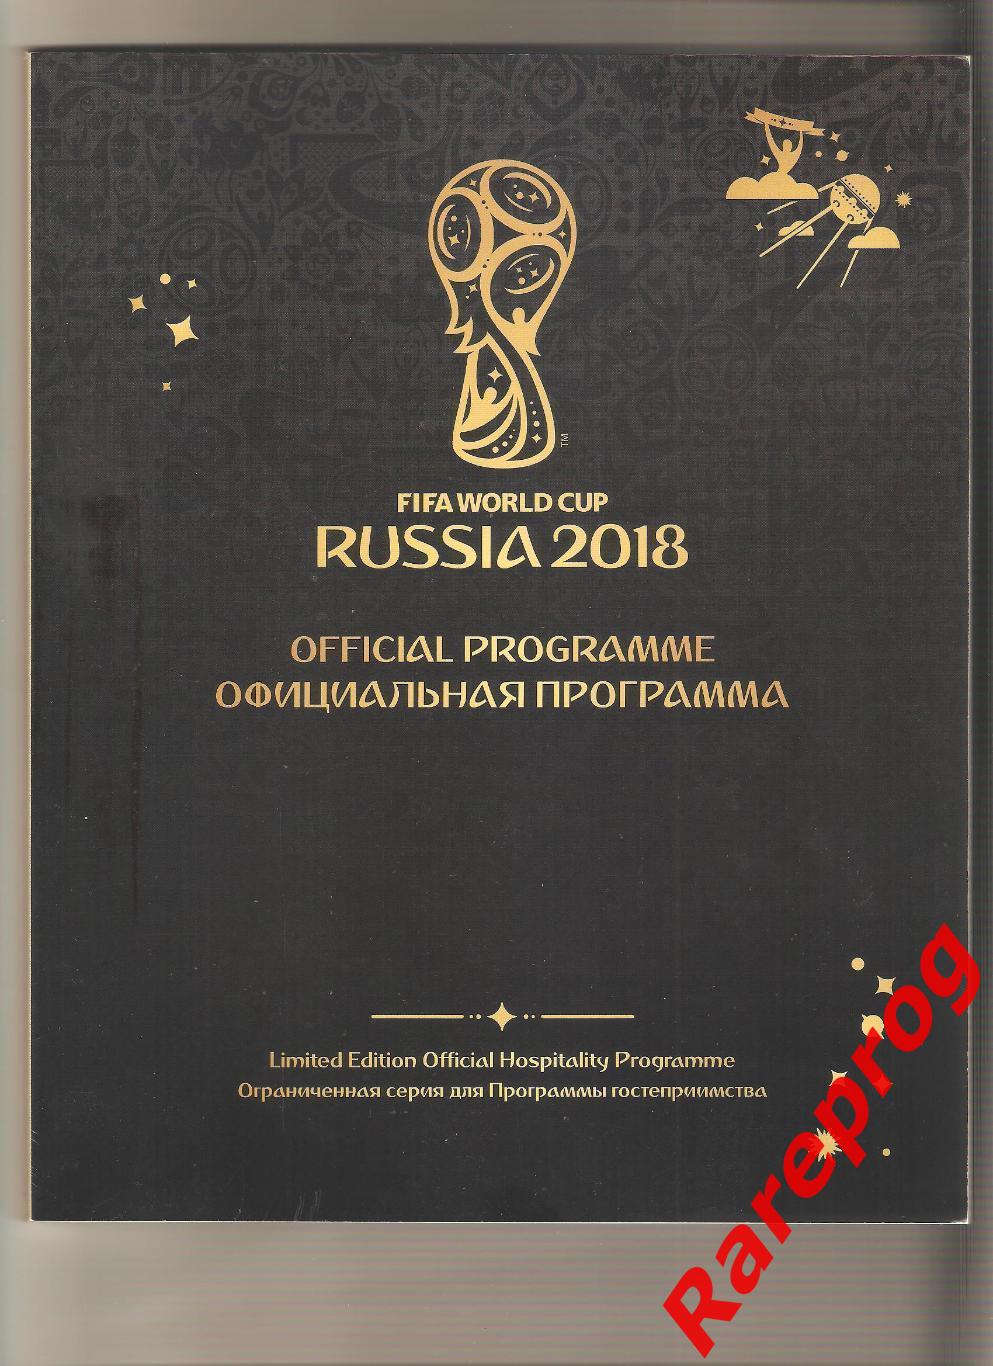 ограниченная серия- программа ФИФА - ЧМ 18 Чемпионат Мира 2018 Россия